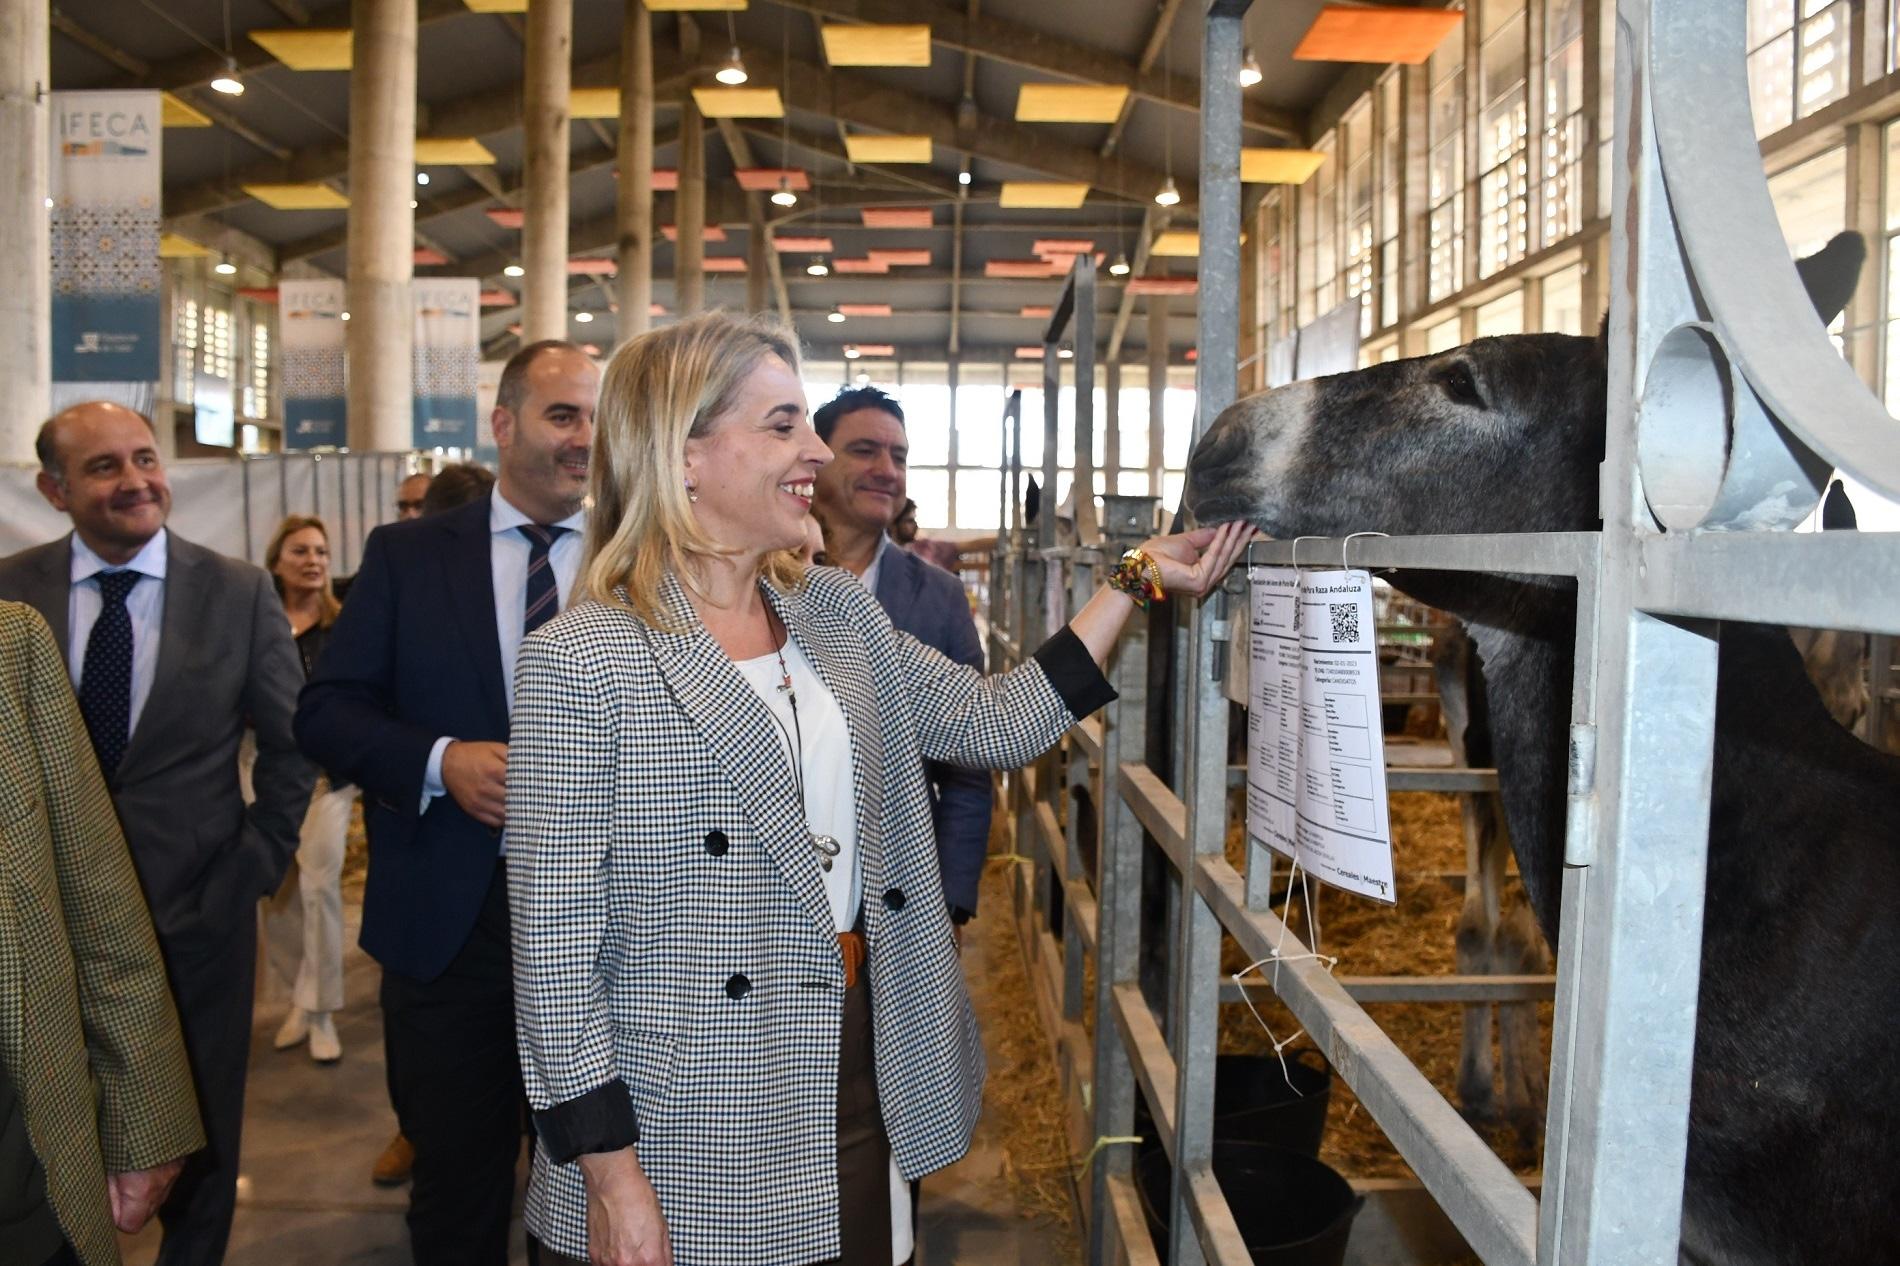 Inaugurada en IFECA la XXIV edición de Fegasur con más de 700 cabezas de ganado